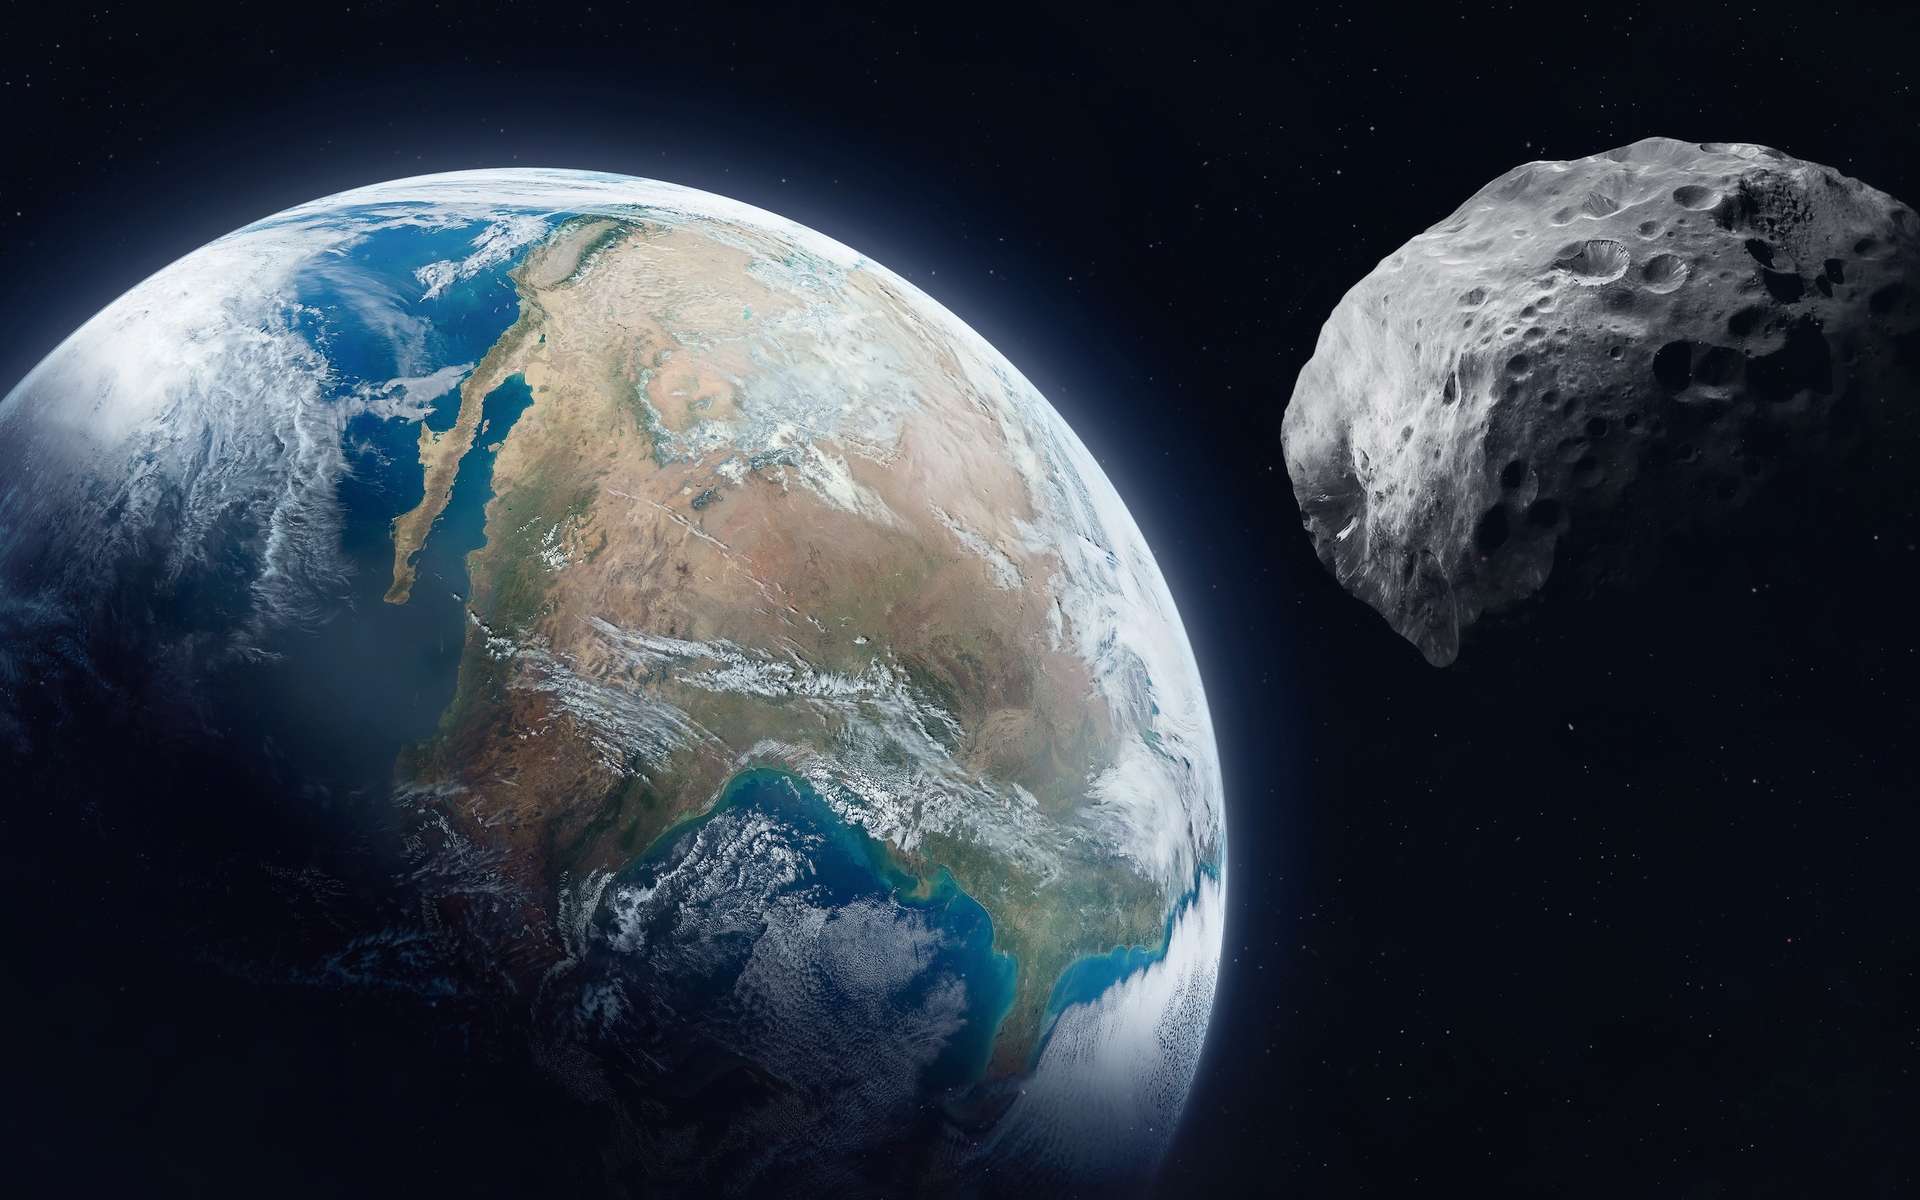 Le plus gros astéroïde de l'année passe près de la Terre aujourd'hui !